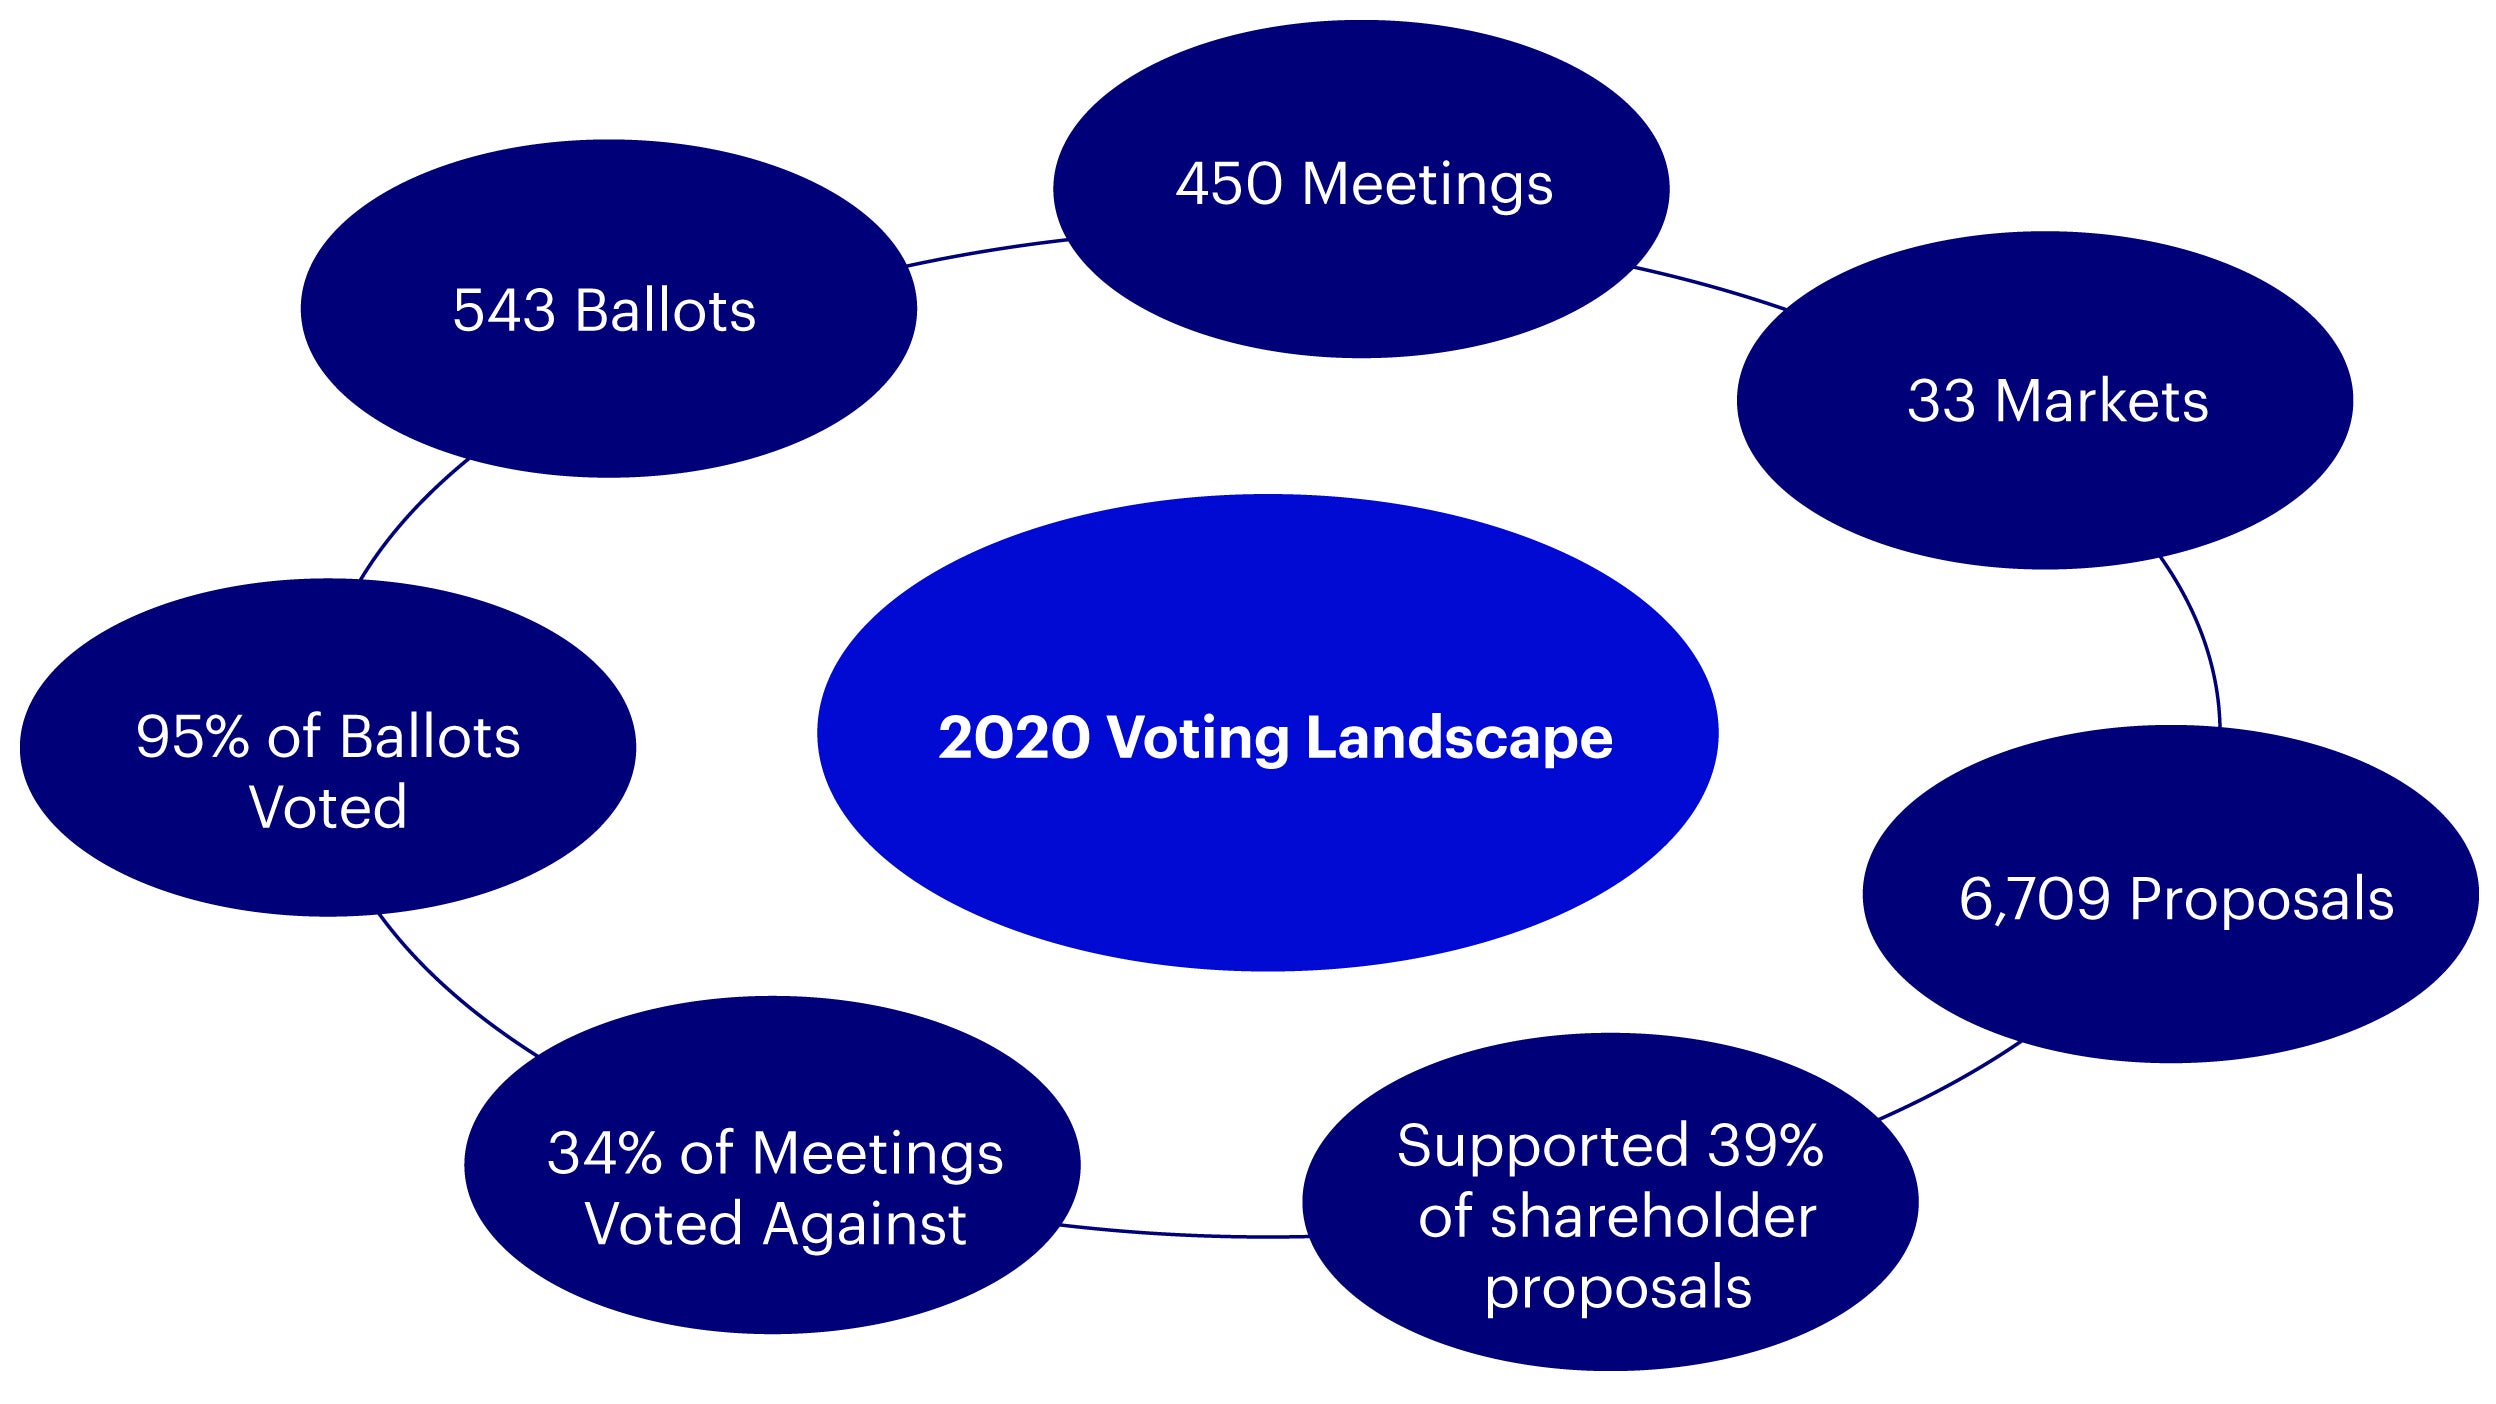 2020 voting landscape